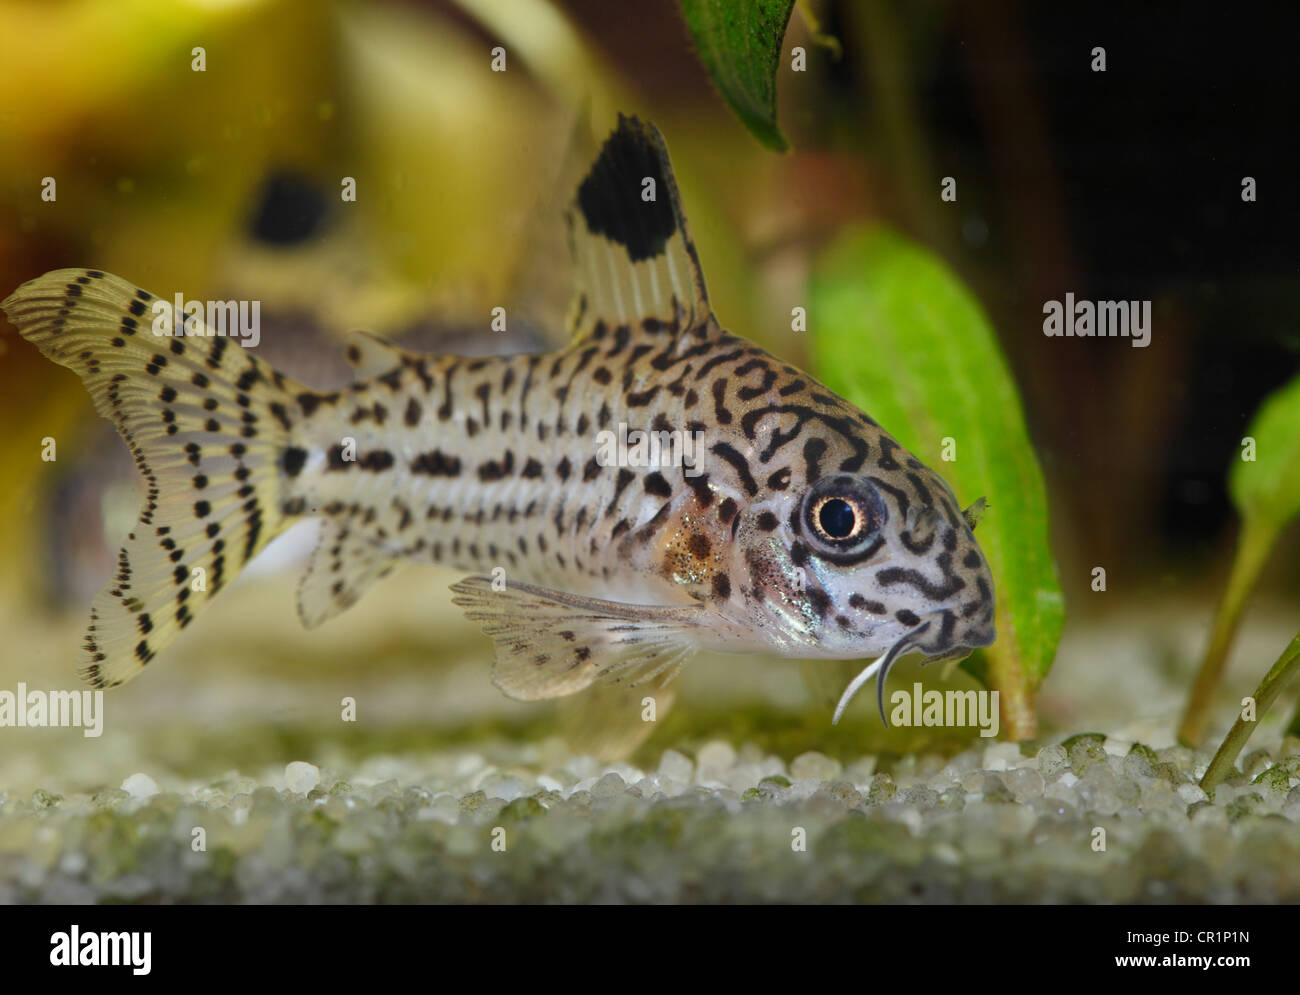 Pesce gatto nativo immagini e fotografie stock ad alta risoluzione - Alamy